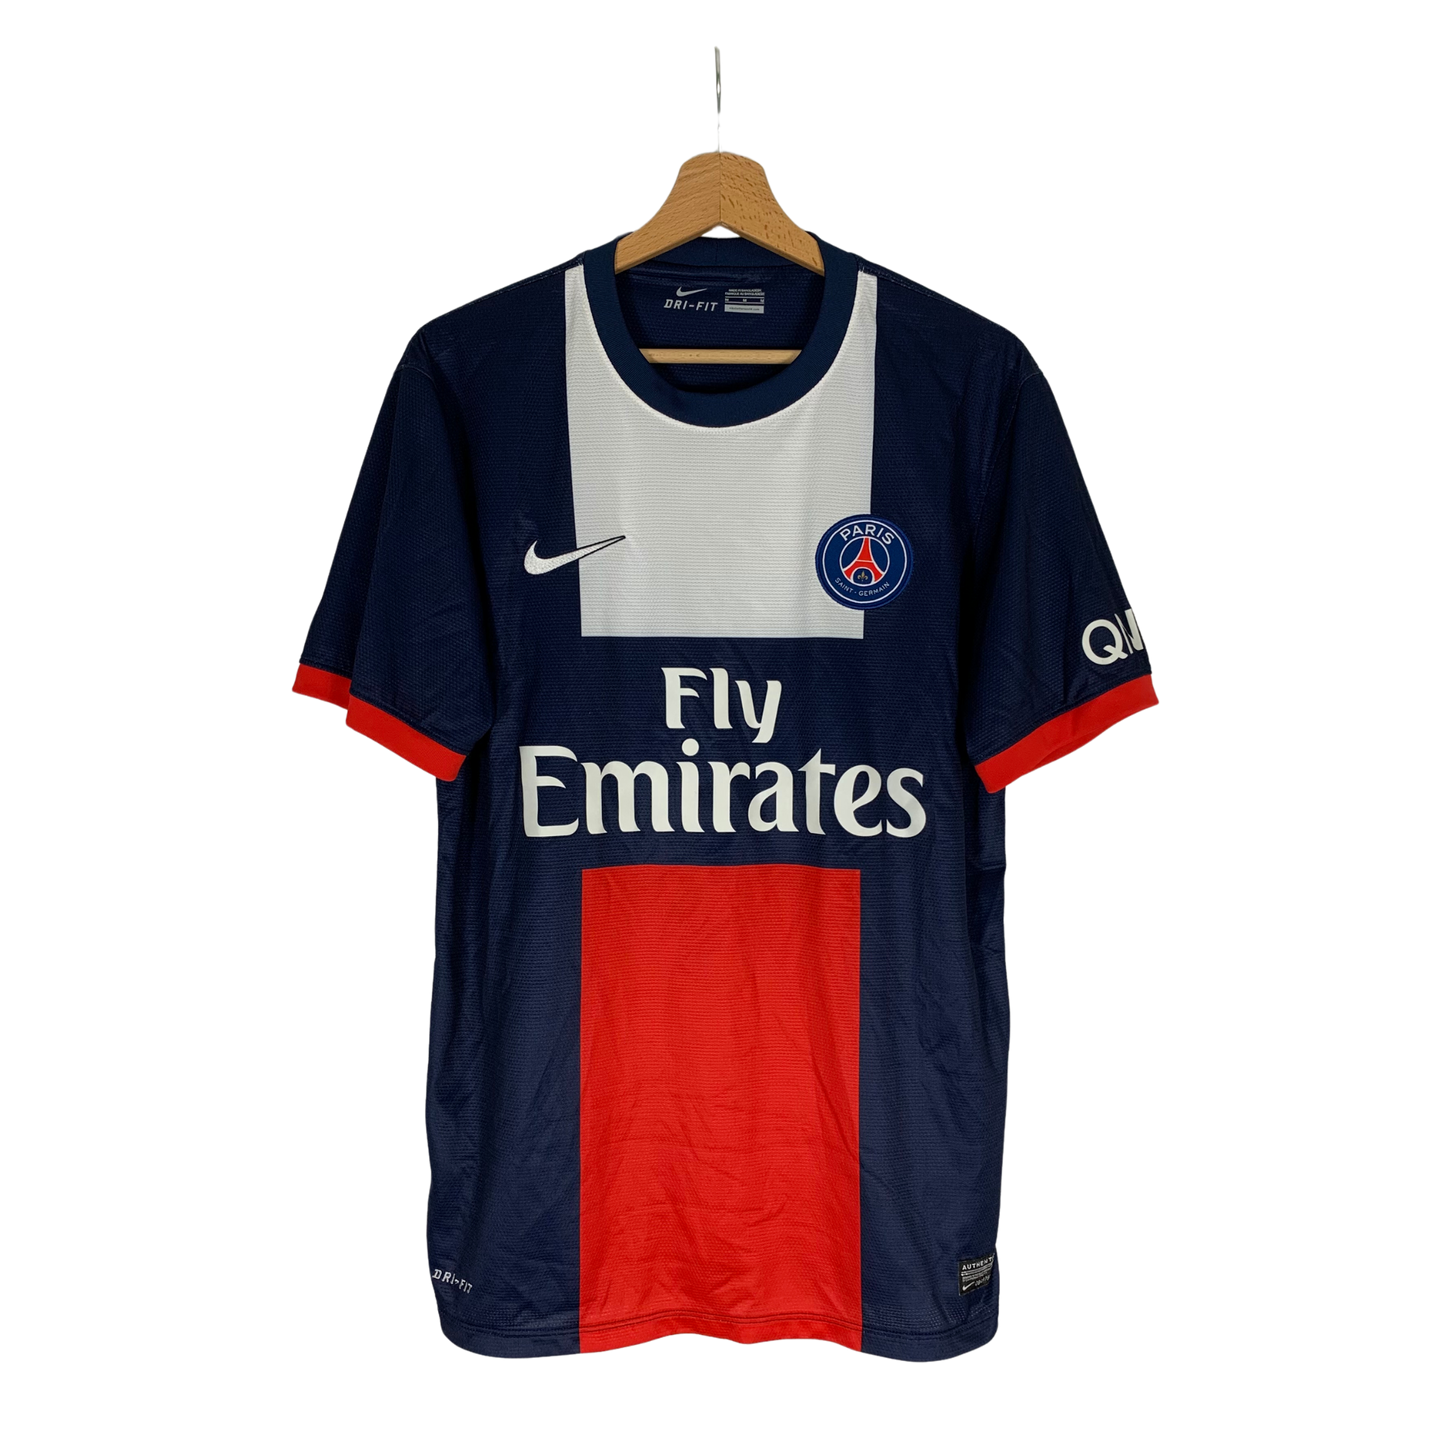 Classic Football Shirt Paris Saint-Germain season 2013-2014 at InnoFoot